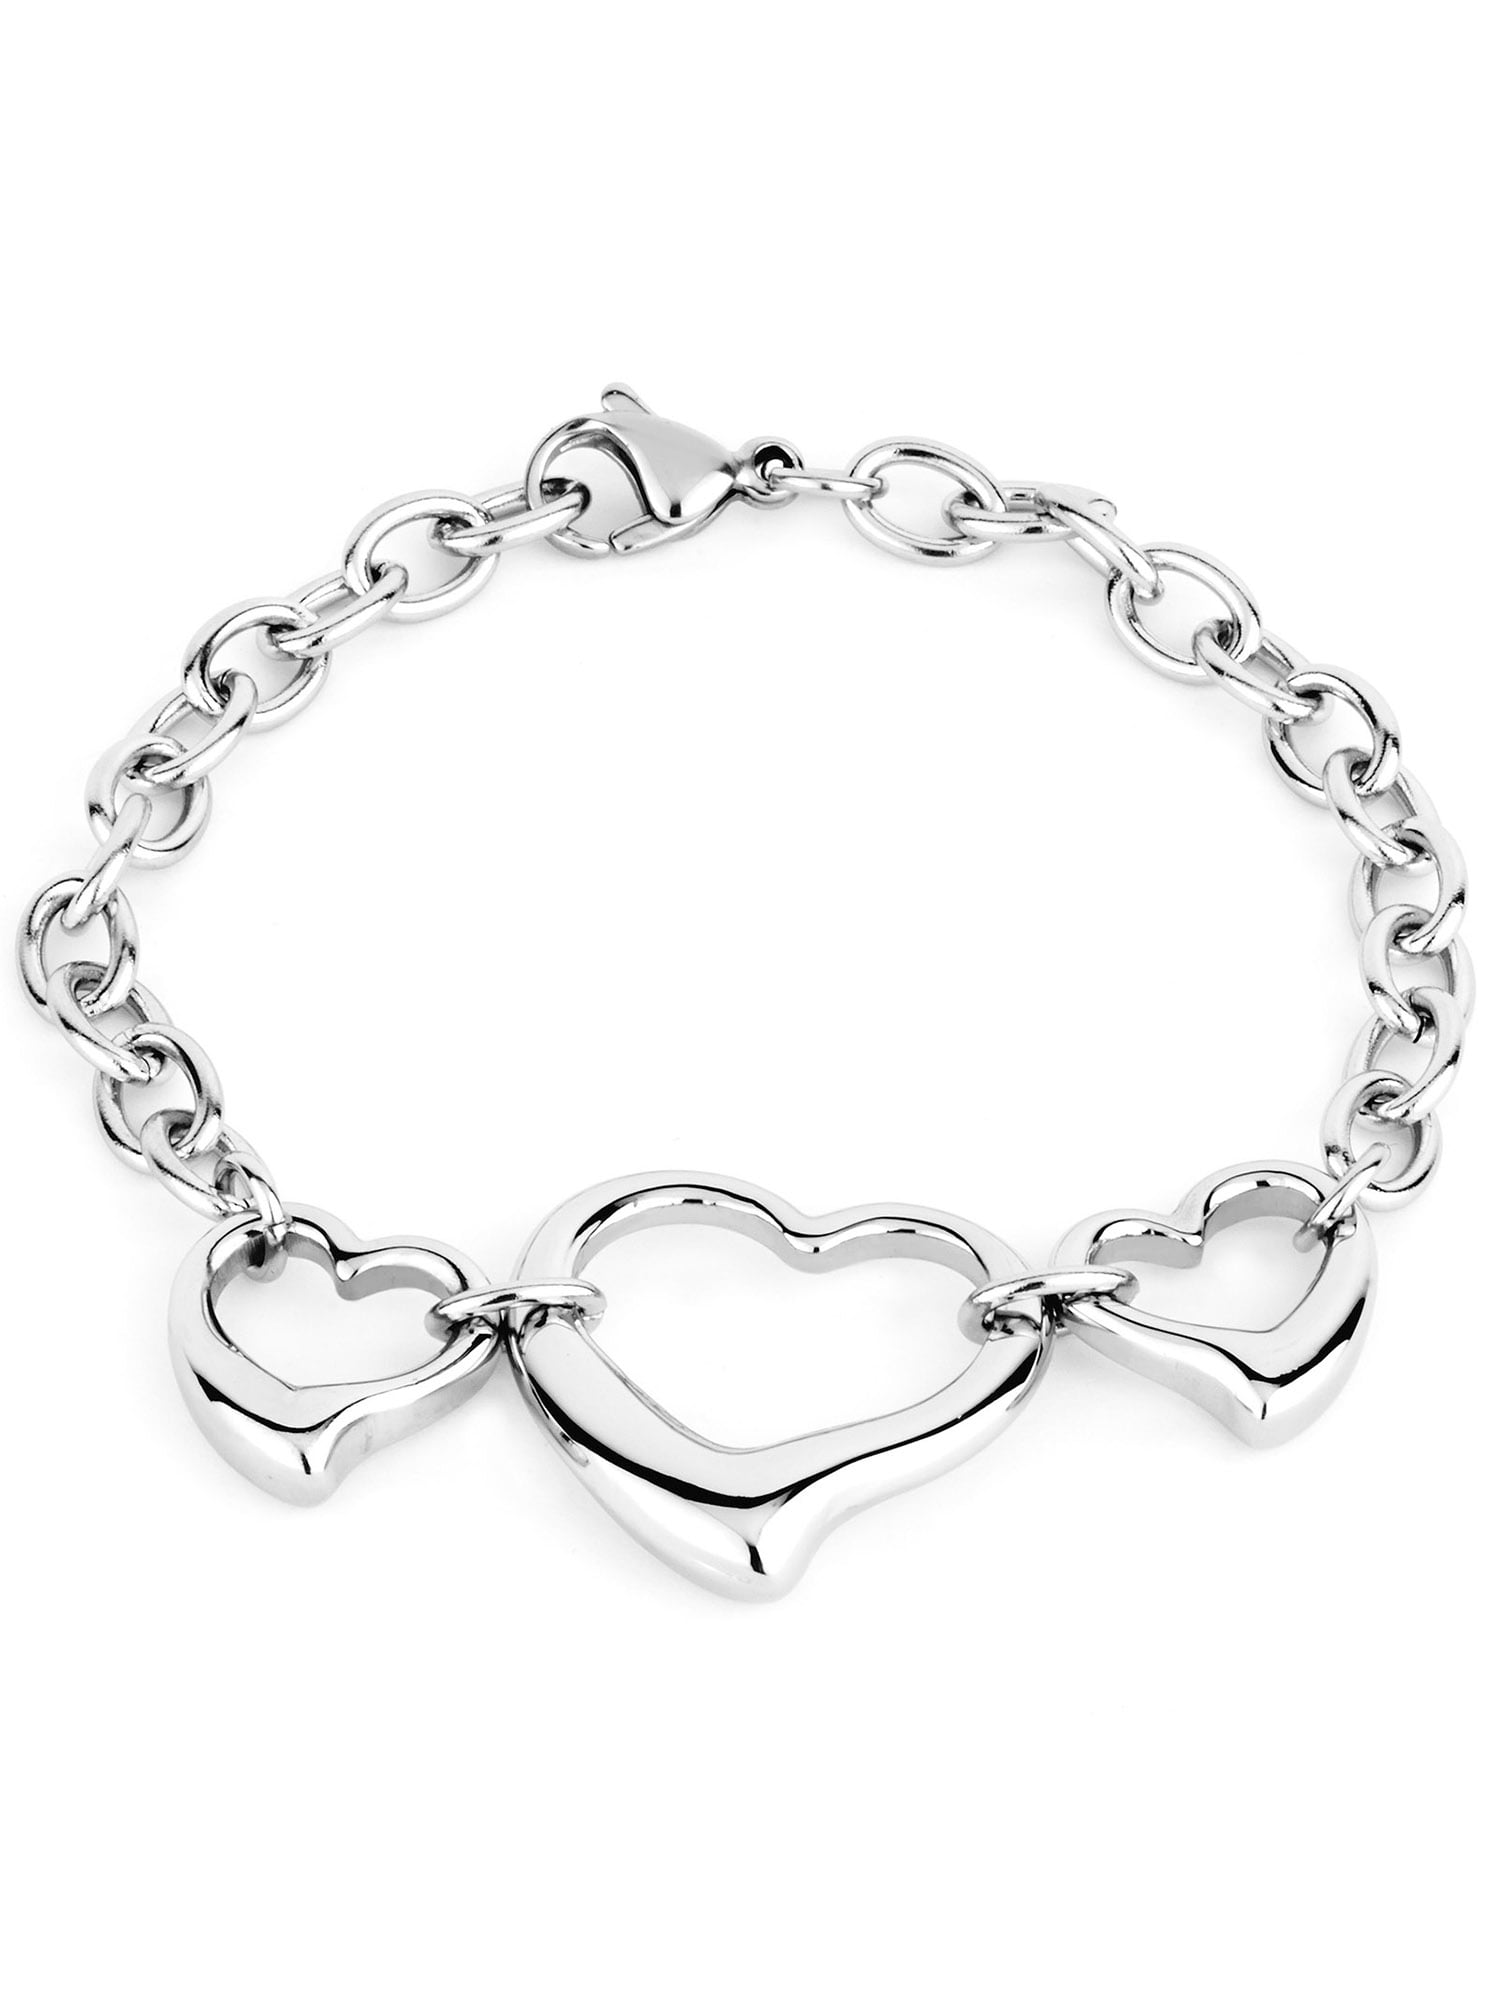 Bracelets - Hearted Charm